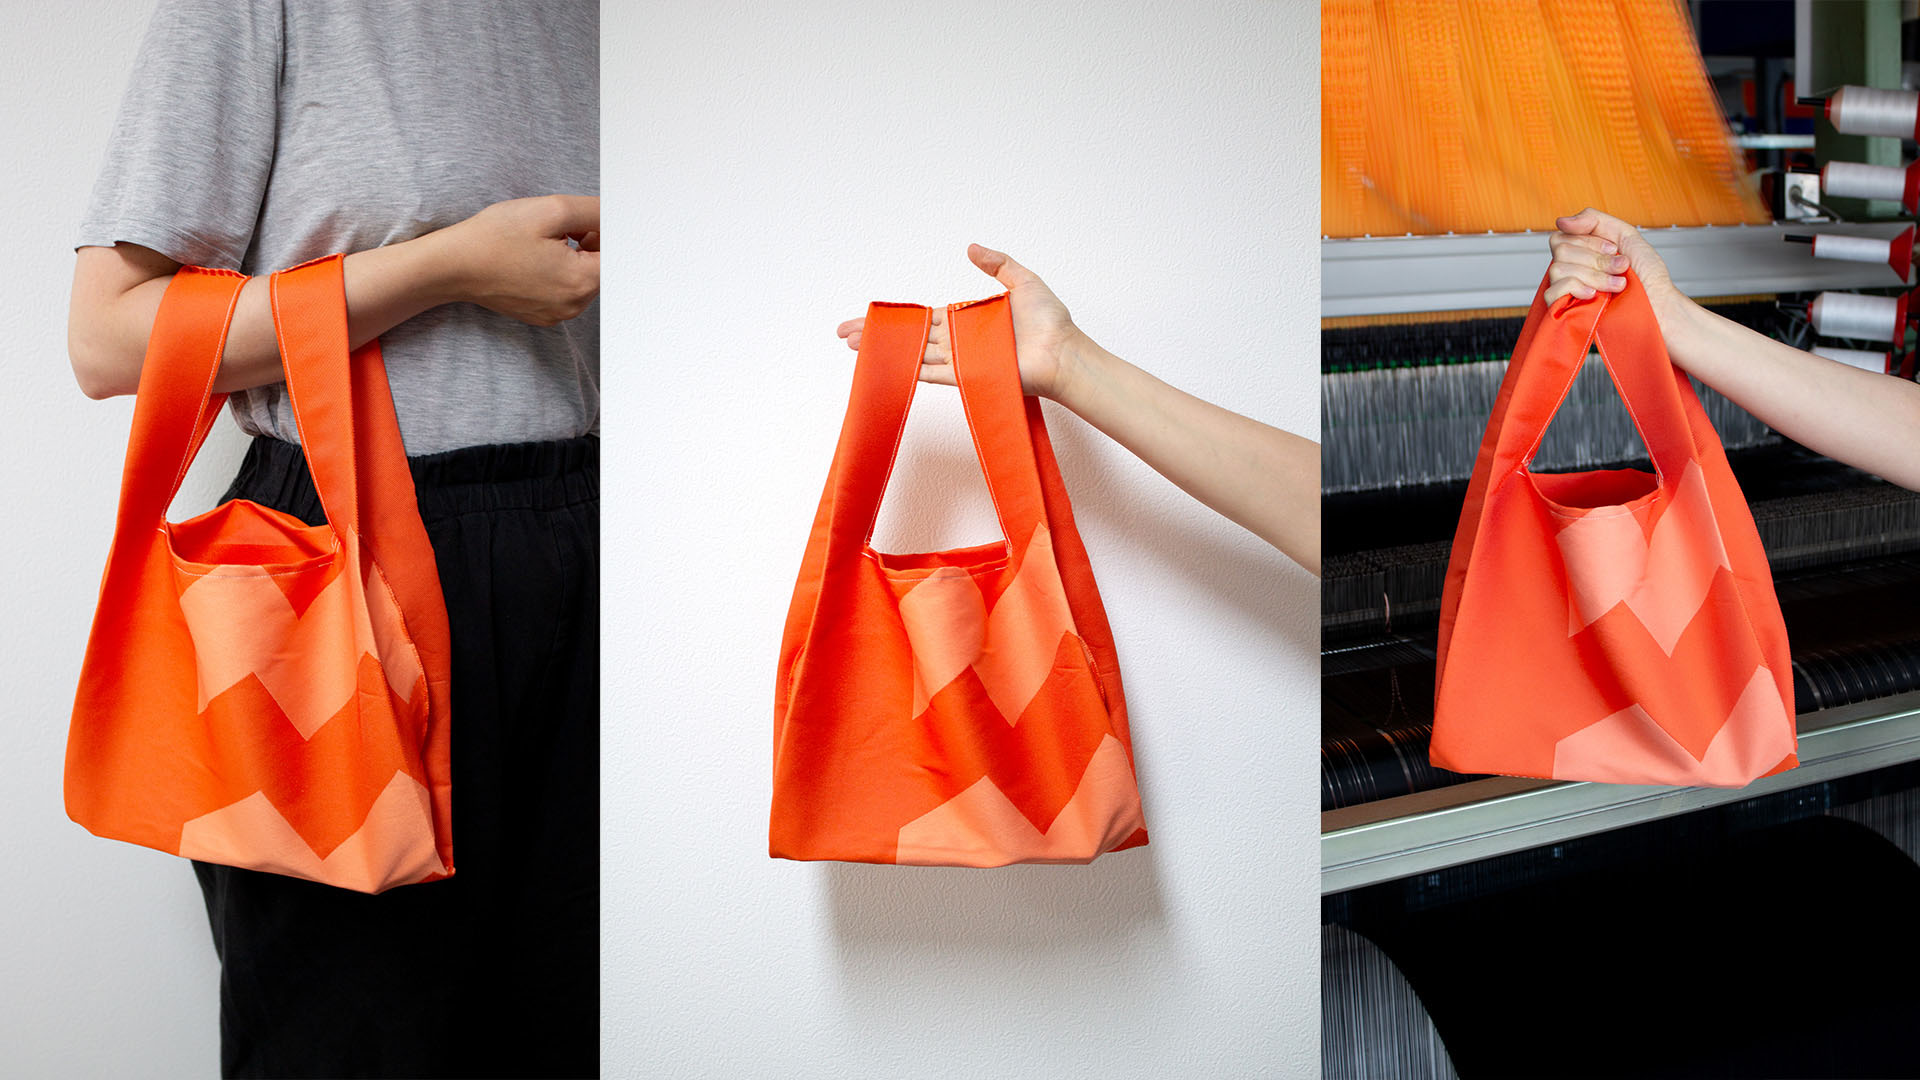 3D woven bag for Queen Maxima